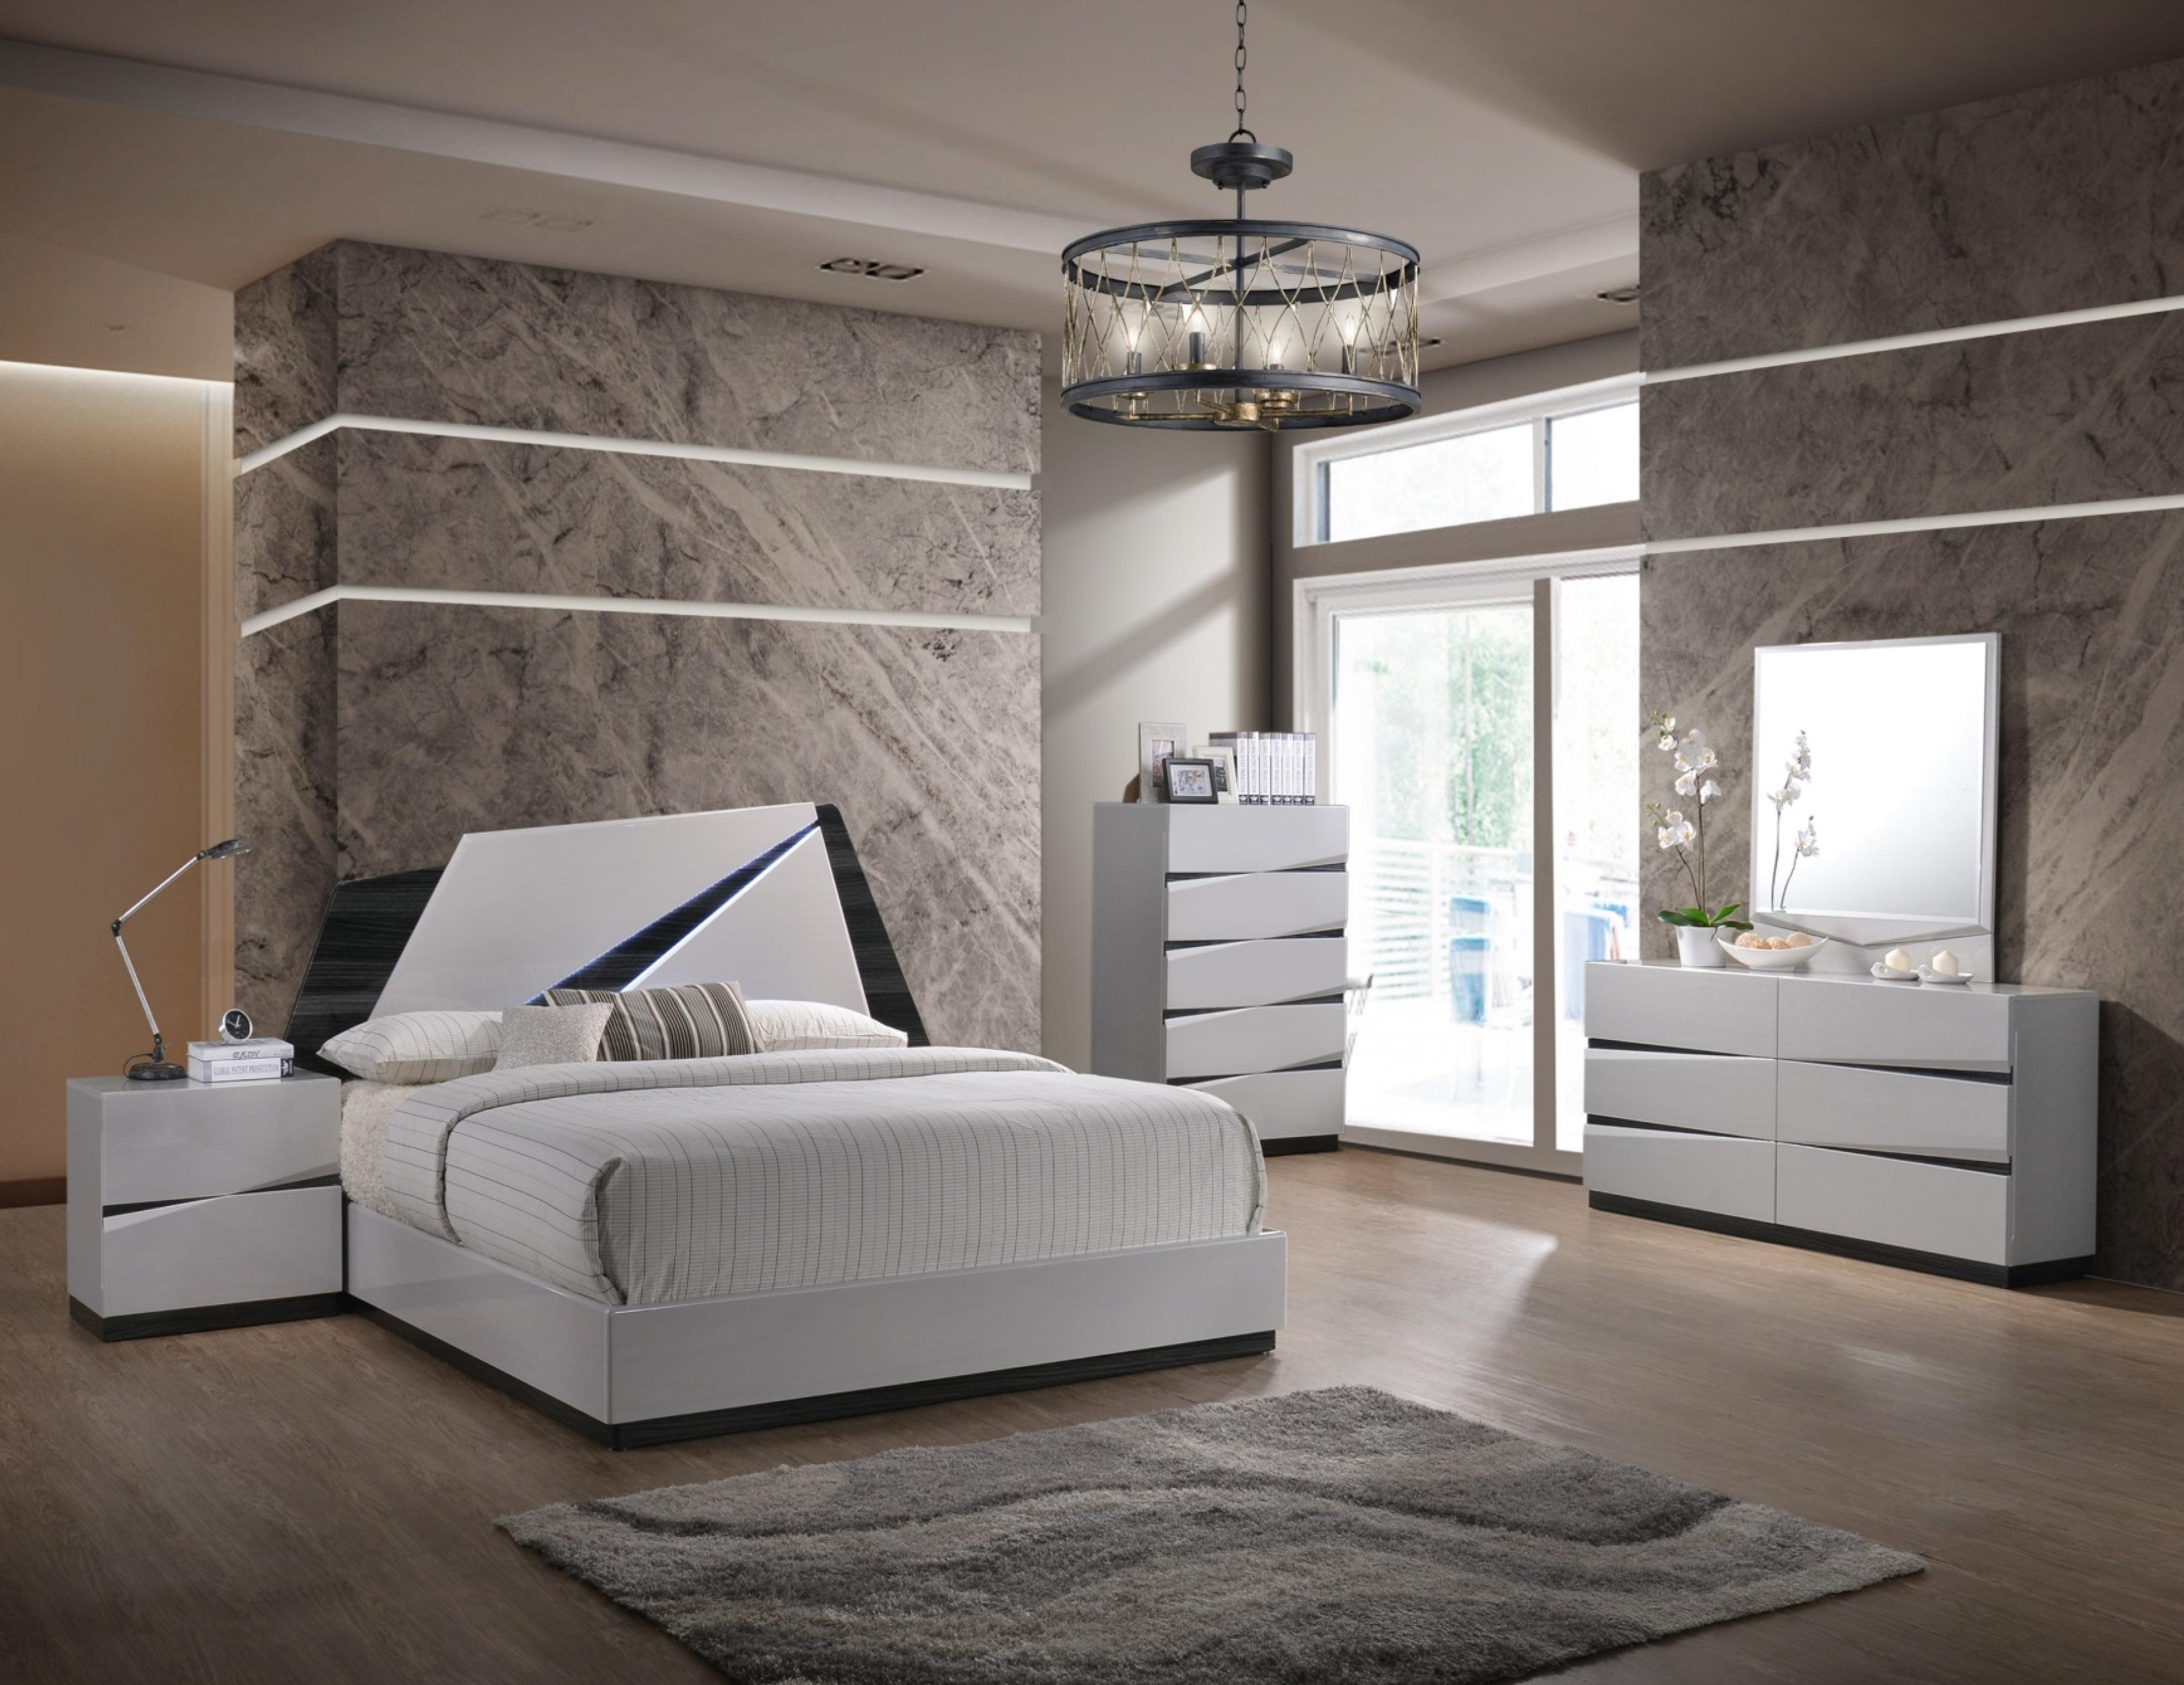 

    
Global Furniture Scarlett Modern White Gloss Finish King Bedroom Set 5 Pcs
